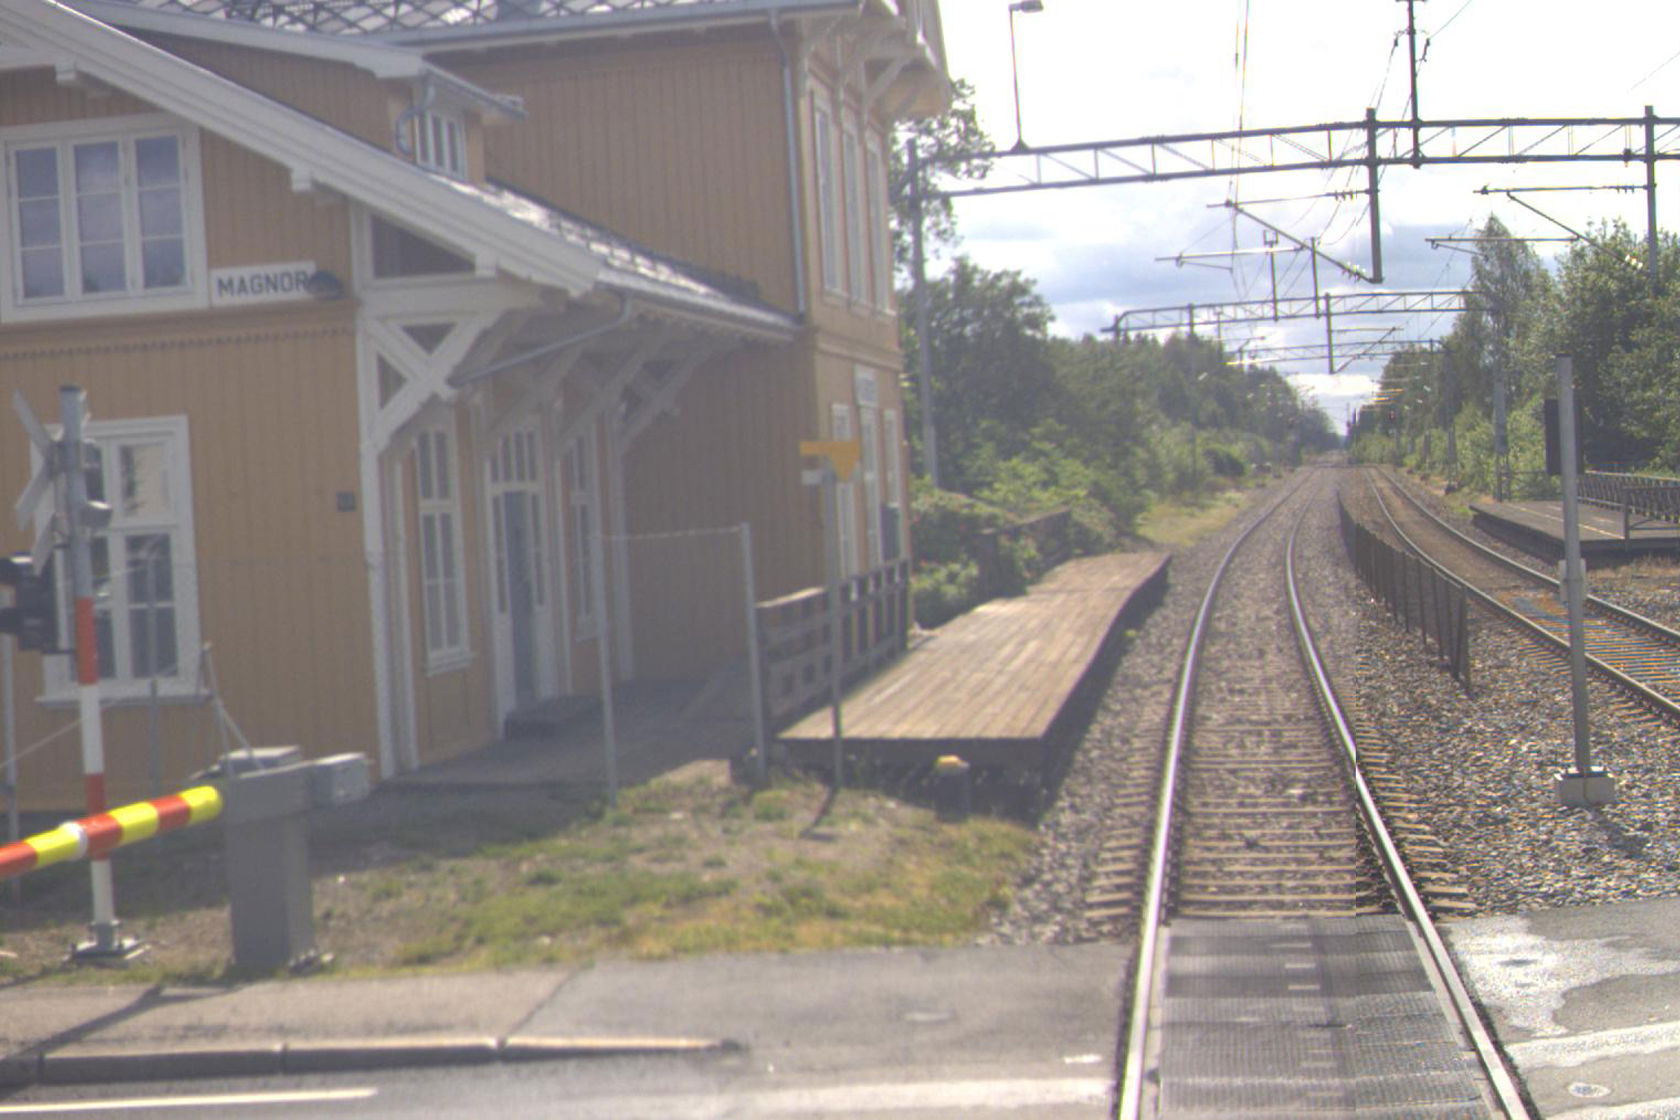 Spor og stasjonsbygning på Magnor stasjon